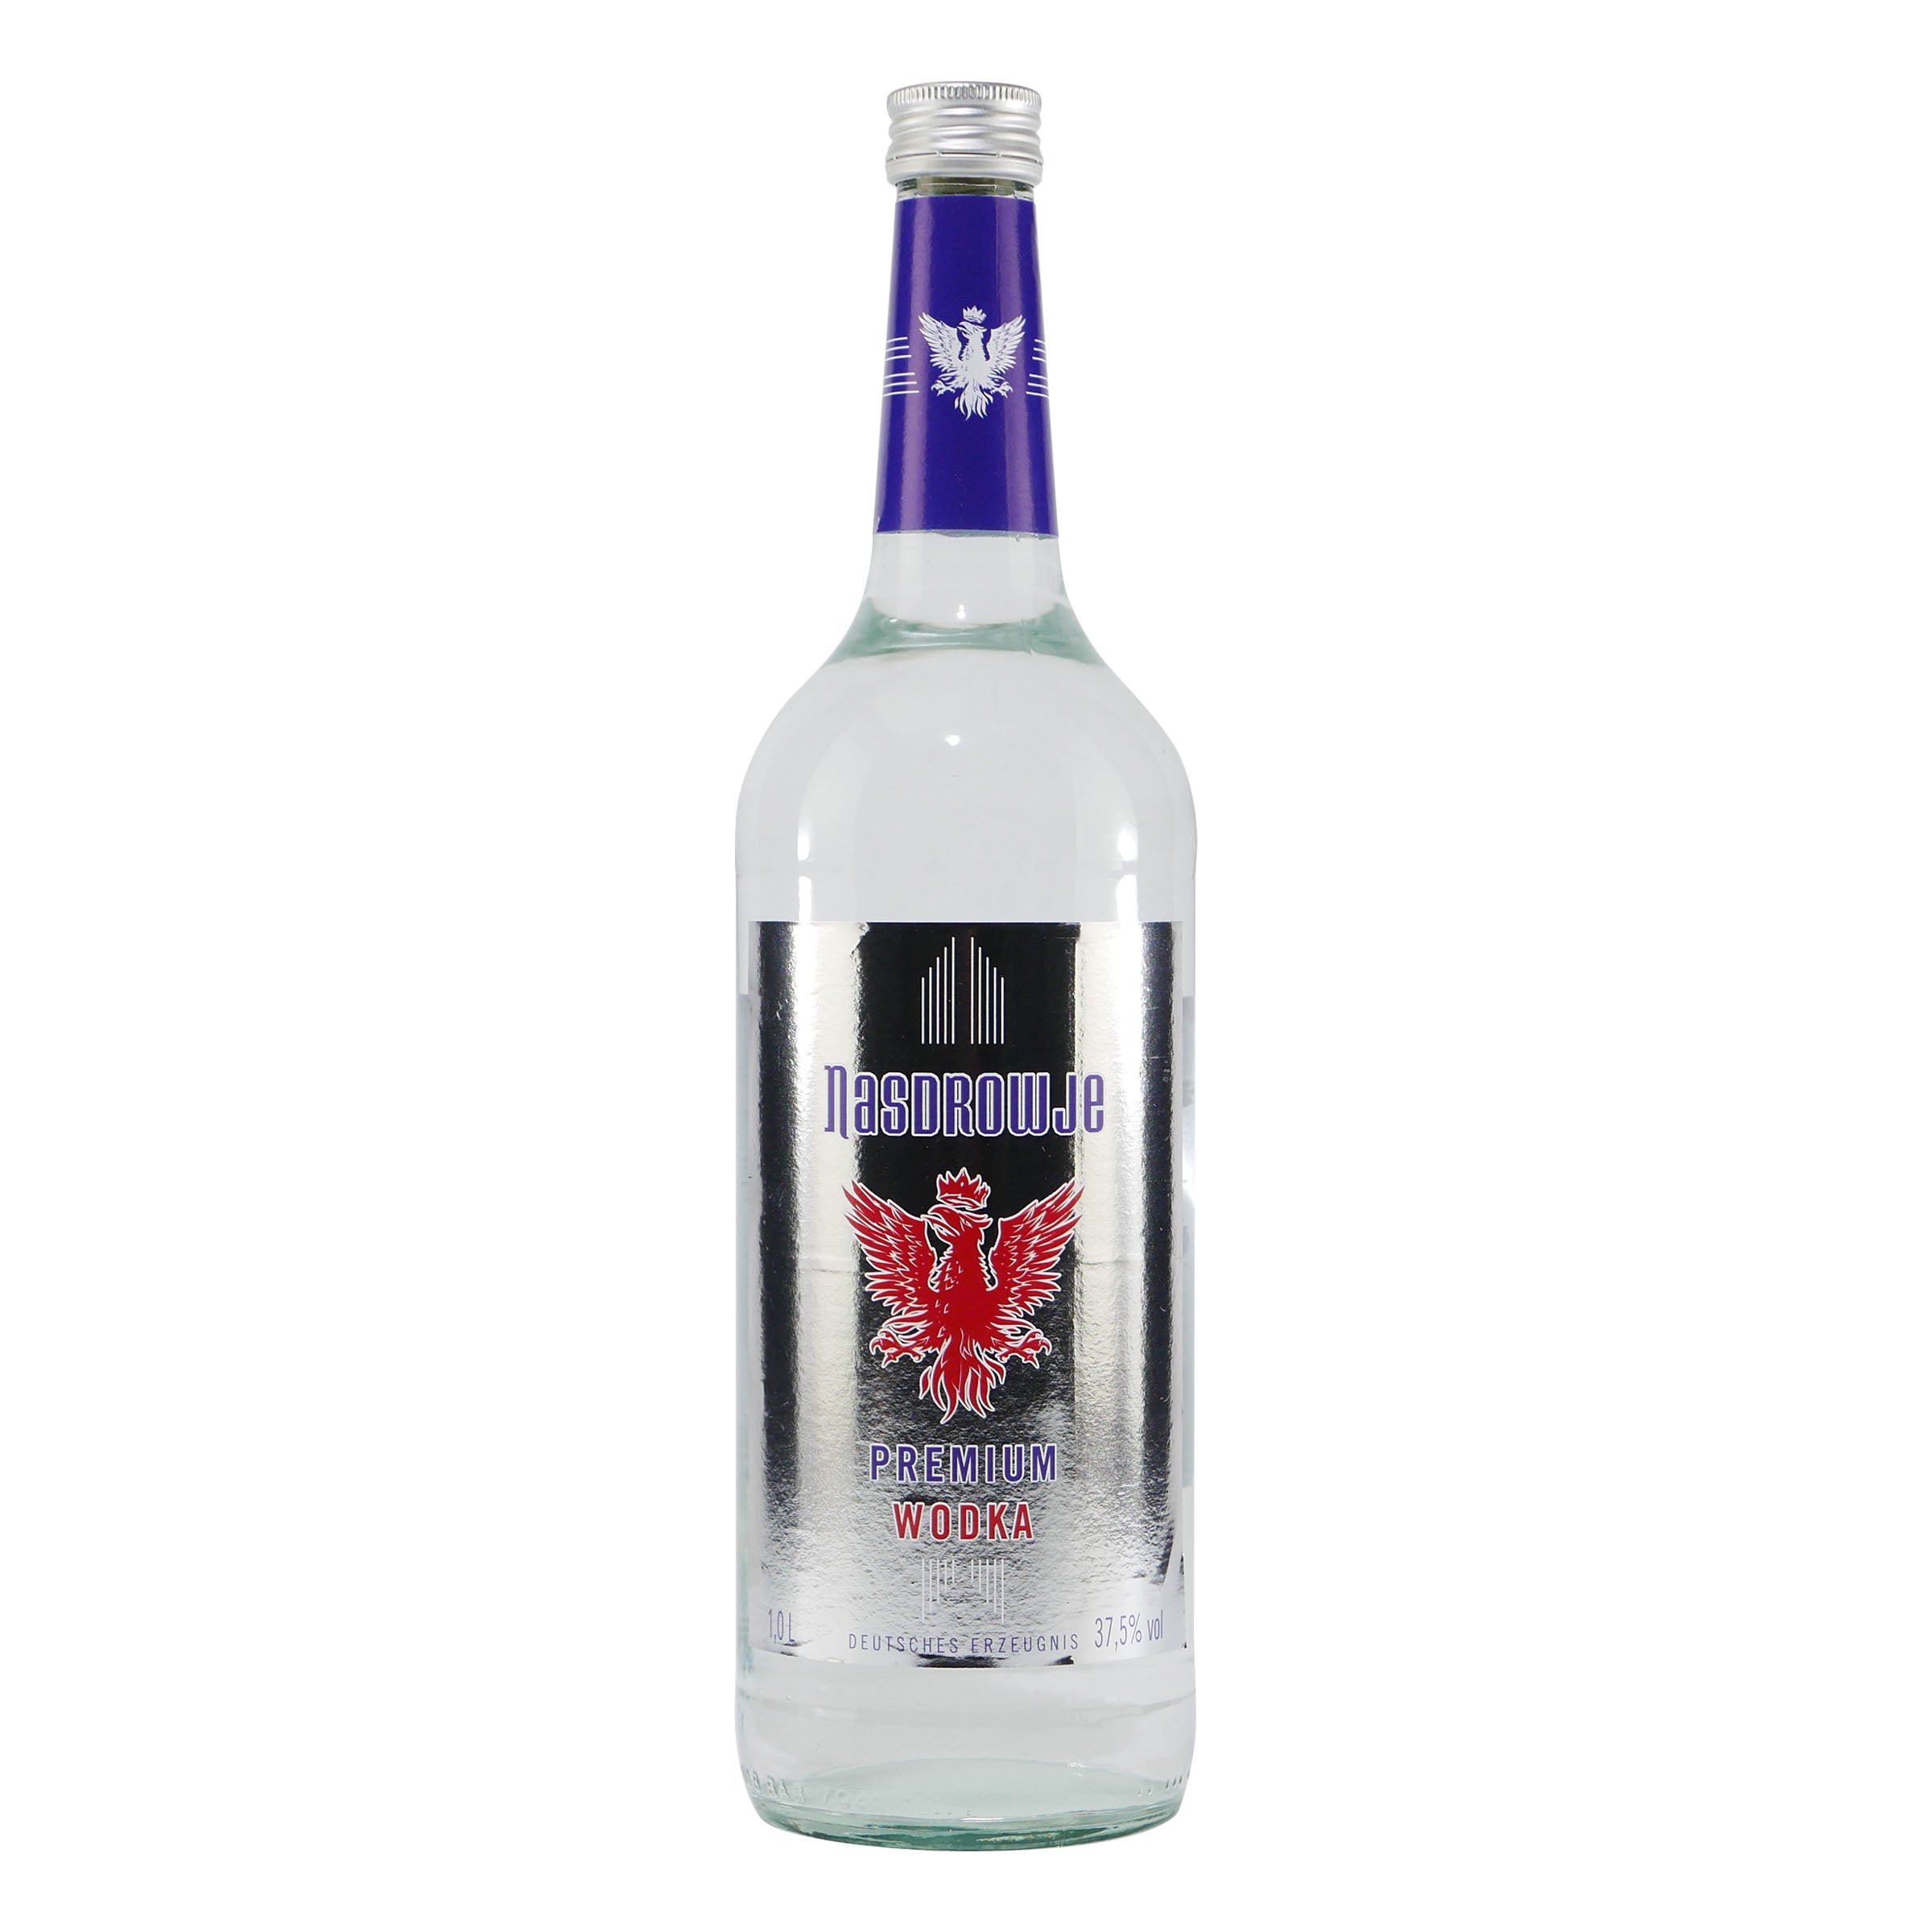 Nasdrowje Premium Wodka